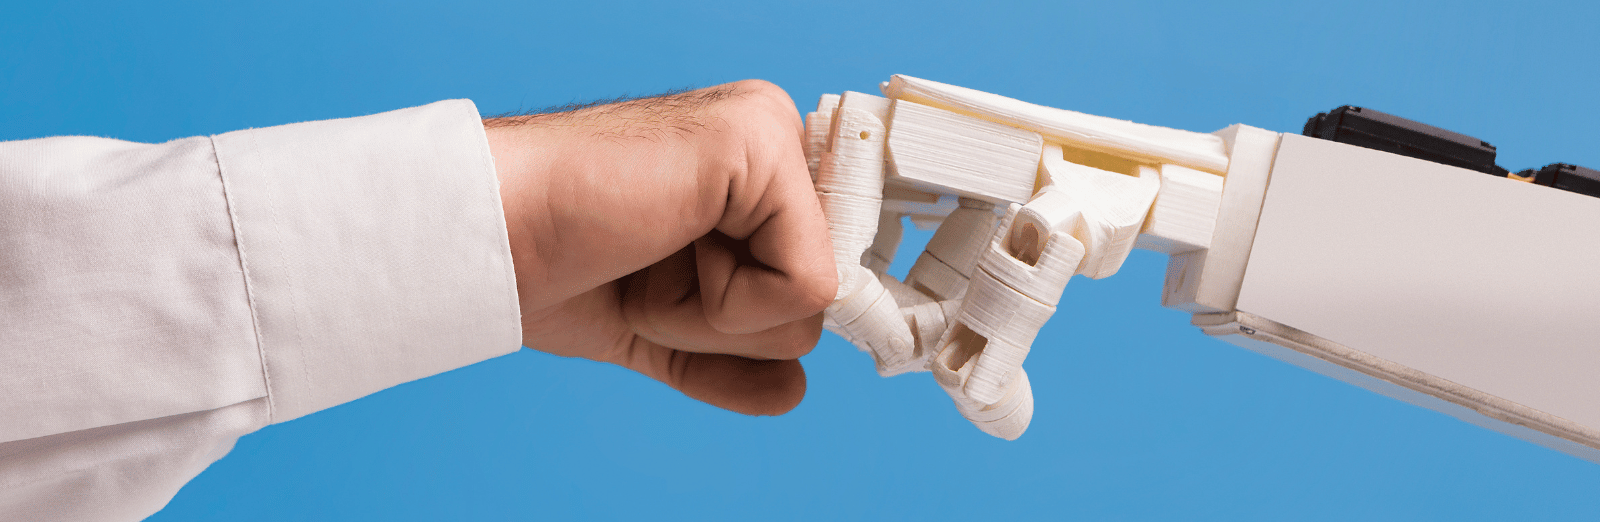 A human fist bumps a robot arm, symbolizing the concept of human vs AI.